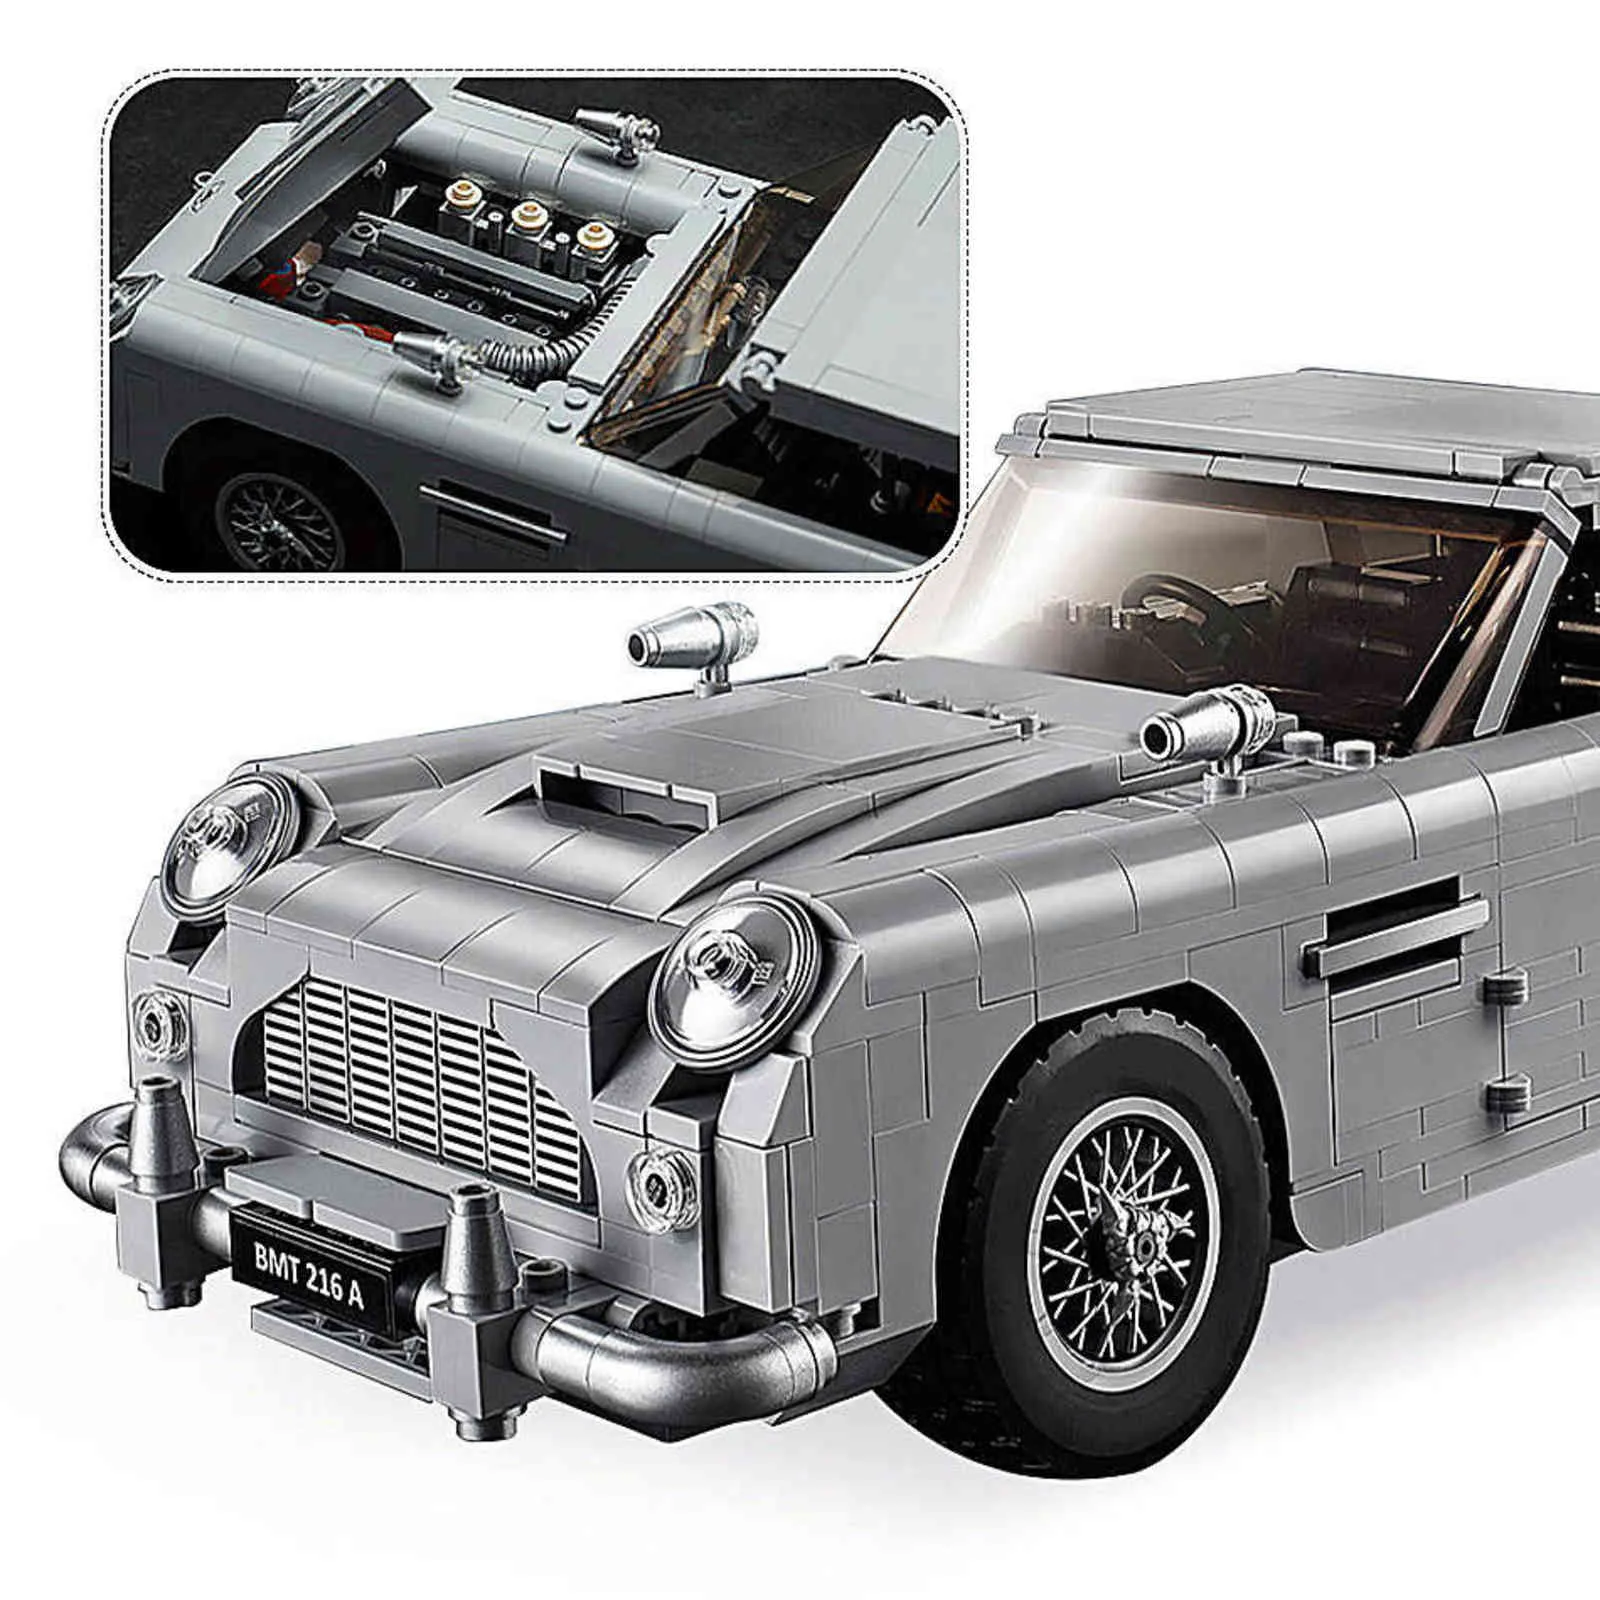 Auf Lager 007 James Bond Technik Auto Serie 10262 Bausteine Bricks Creator Kinder Modell Geschenke Spielzeug H1103